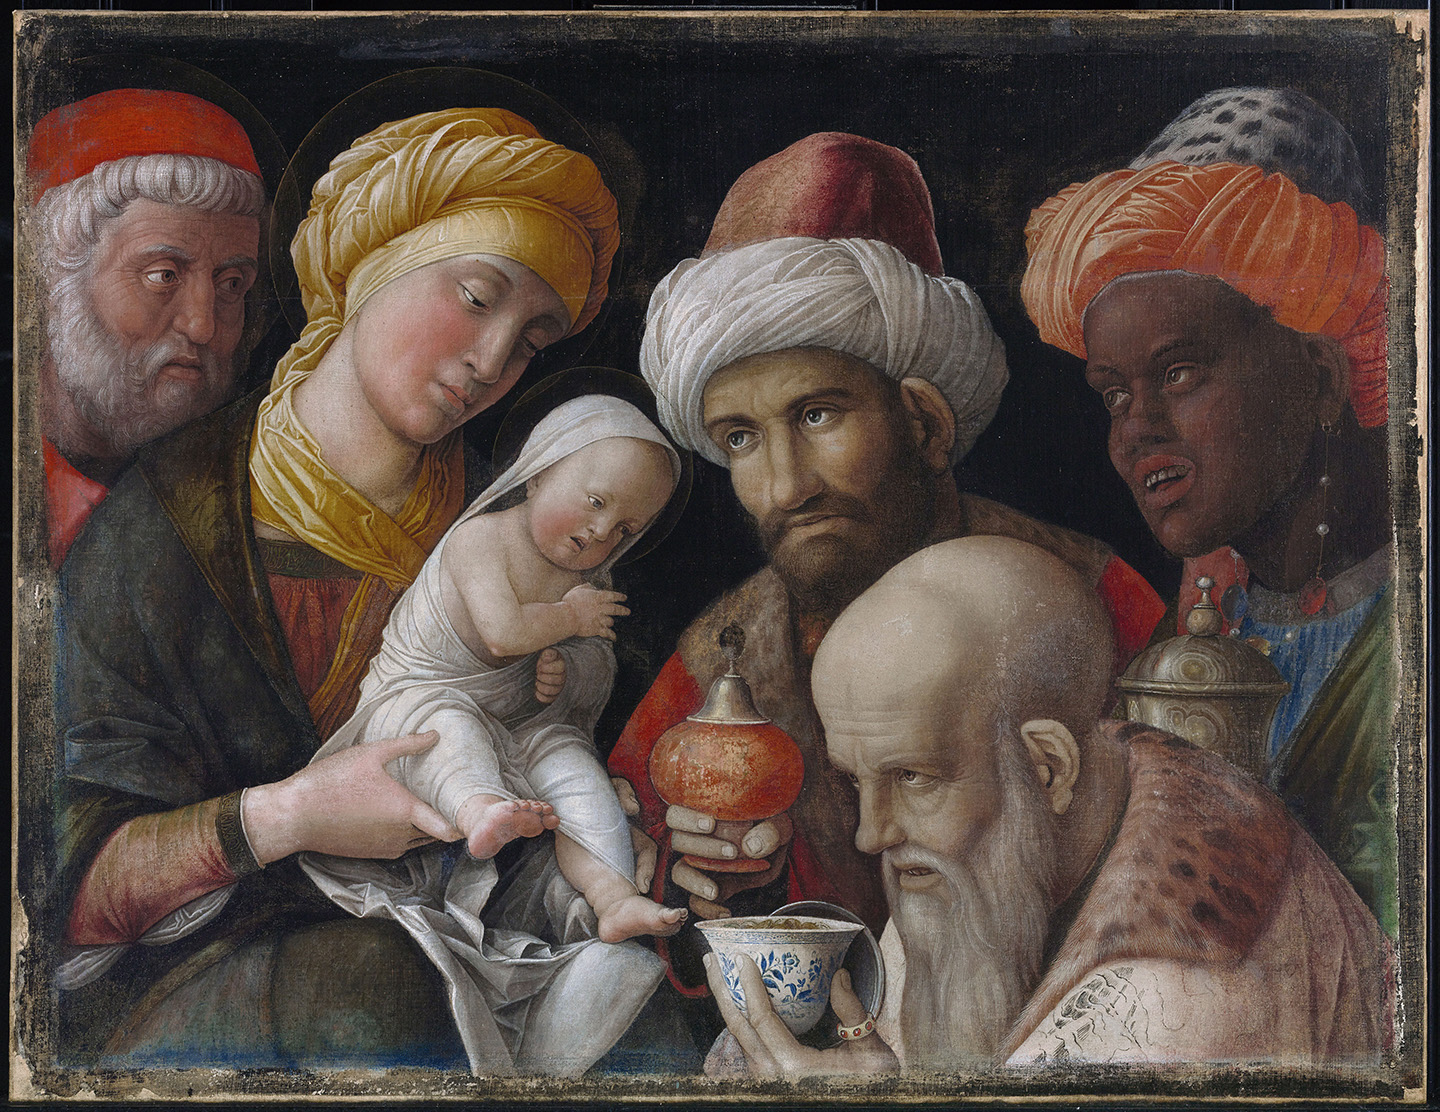 Tác phẩm “Adoration of the Magi” (Sự tôn thờ của các nhà thông thái) của họa sĩ Andrea Mantegna, vẽ khoảng năm 1495–1505. Tranh sơn distemper trên vải lanh. Trung tâm Getty thuộc Bảo tàng J. Paul Getty, California. (Ảnh: Tài liệu công cộng)